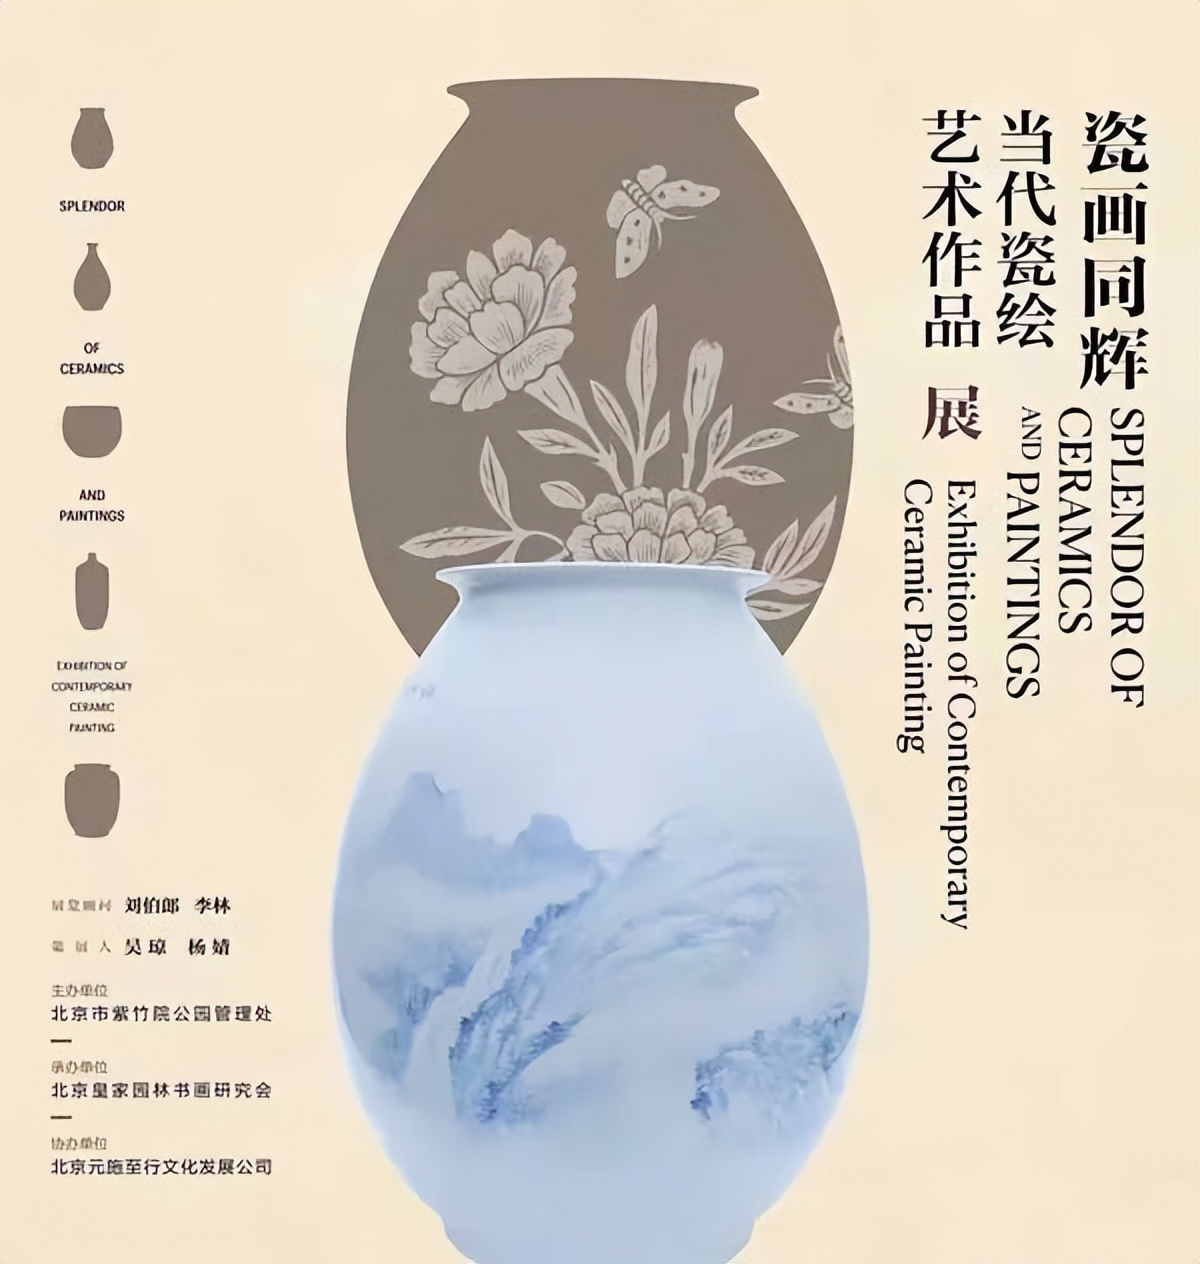 “瓷画同辉——当代瓷绘艺术作品展”在北京市紫竹院公园启幕